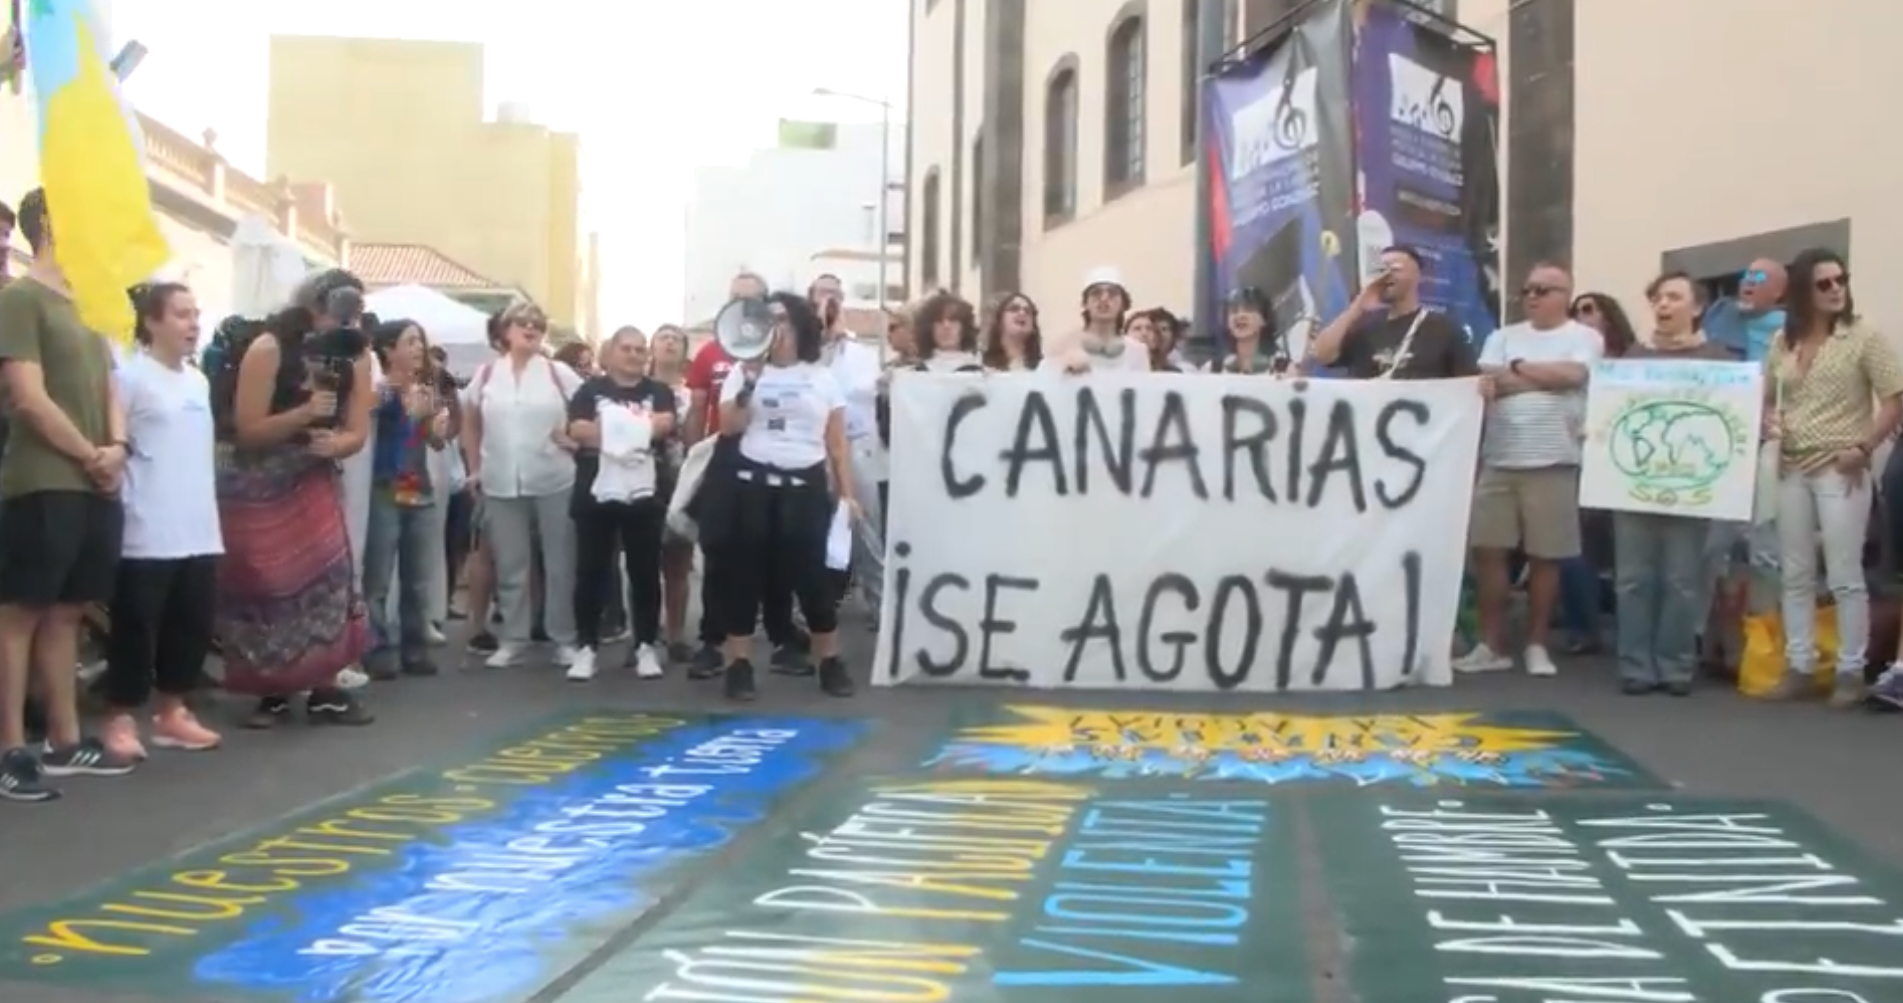 La protesta dei cittadini delle Isole Canarie contro gli eccessi del turismo: «Il costo della vita è diventato insostenibile per noi»